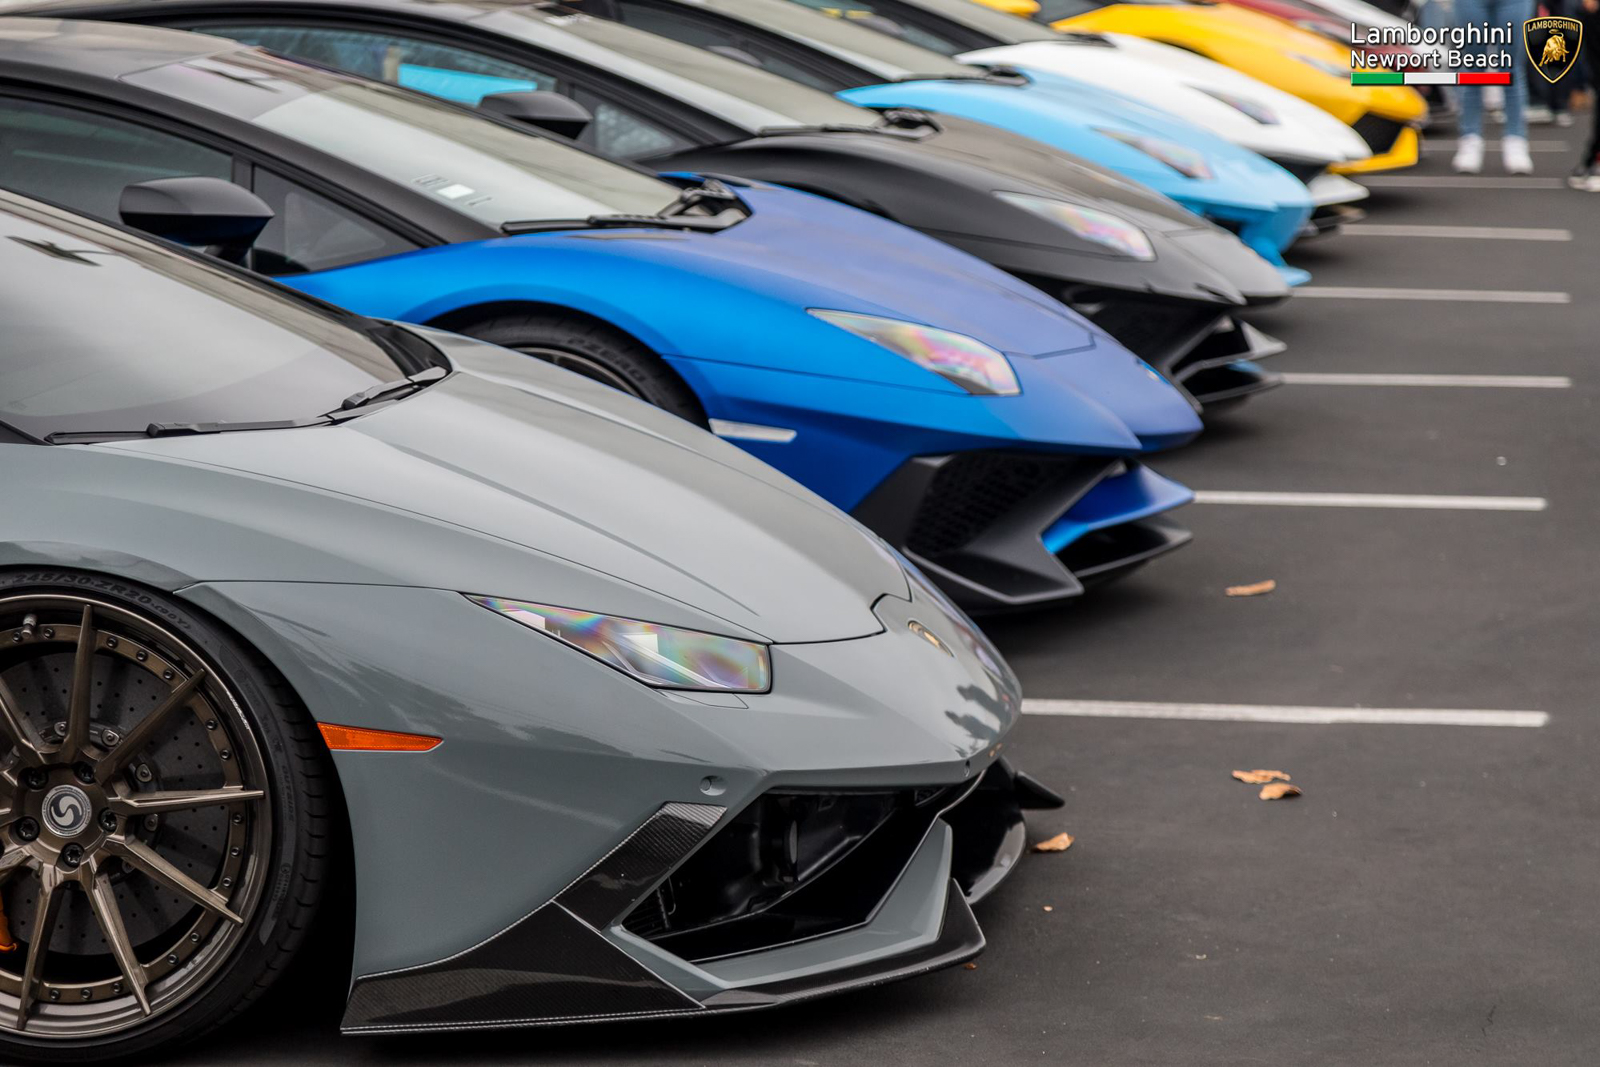 Bulls on Parade: Lamborghini Newport Beach Supercar Show